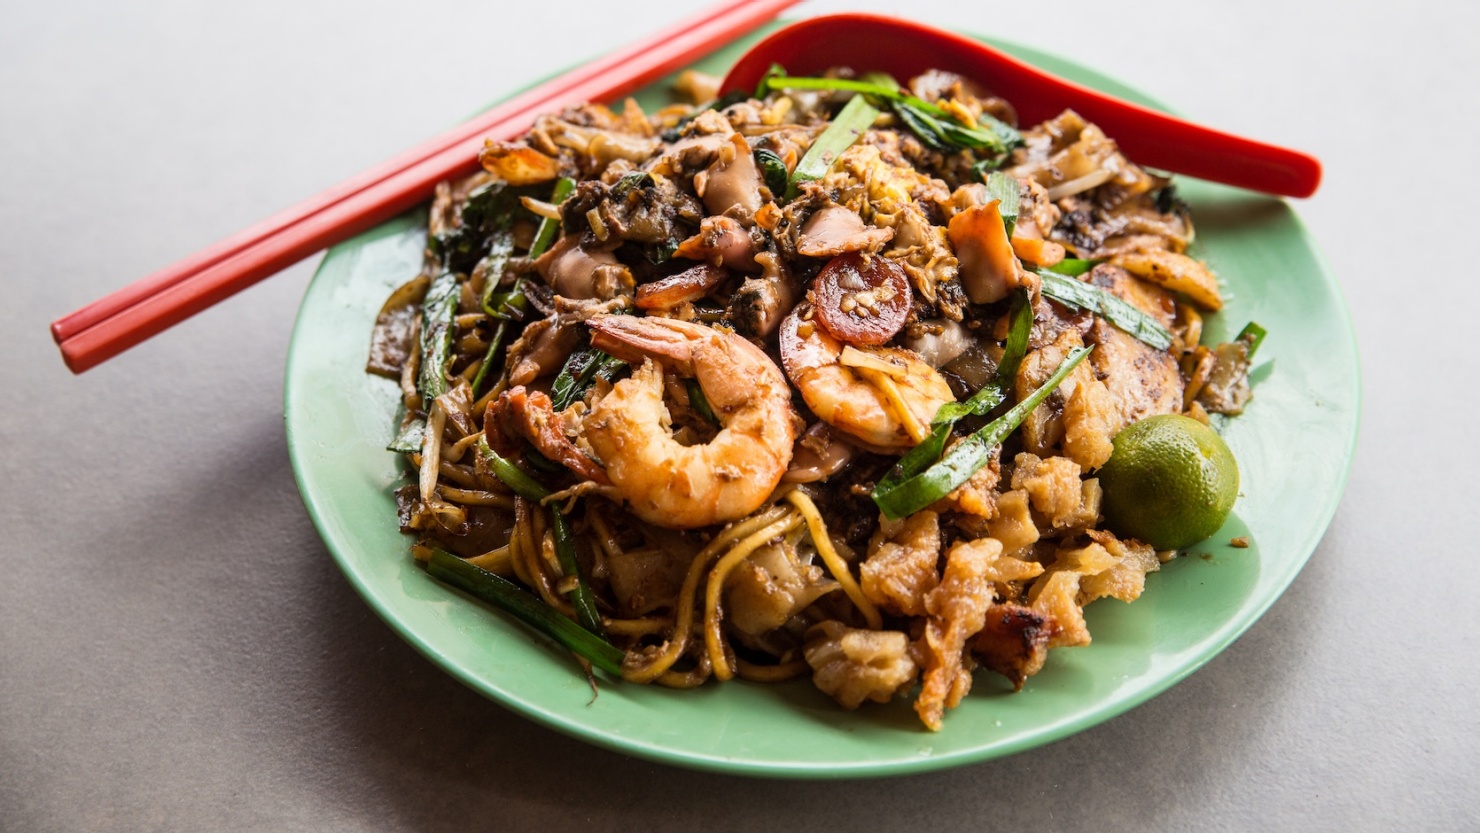 炒粿条是新加坡一道几十年来历久不衰的小贩美食经典代表.